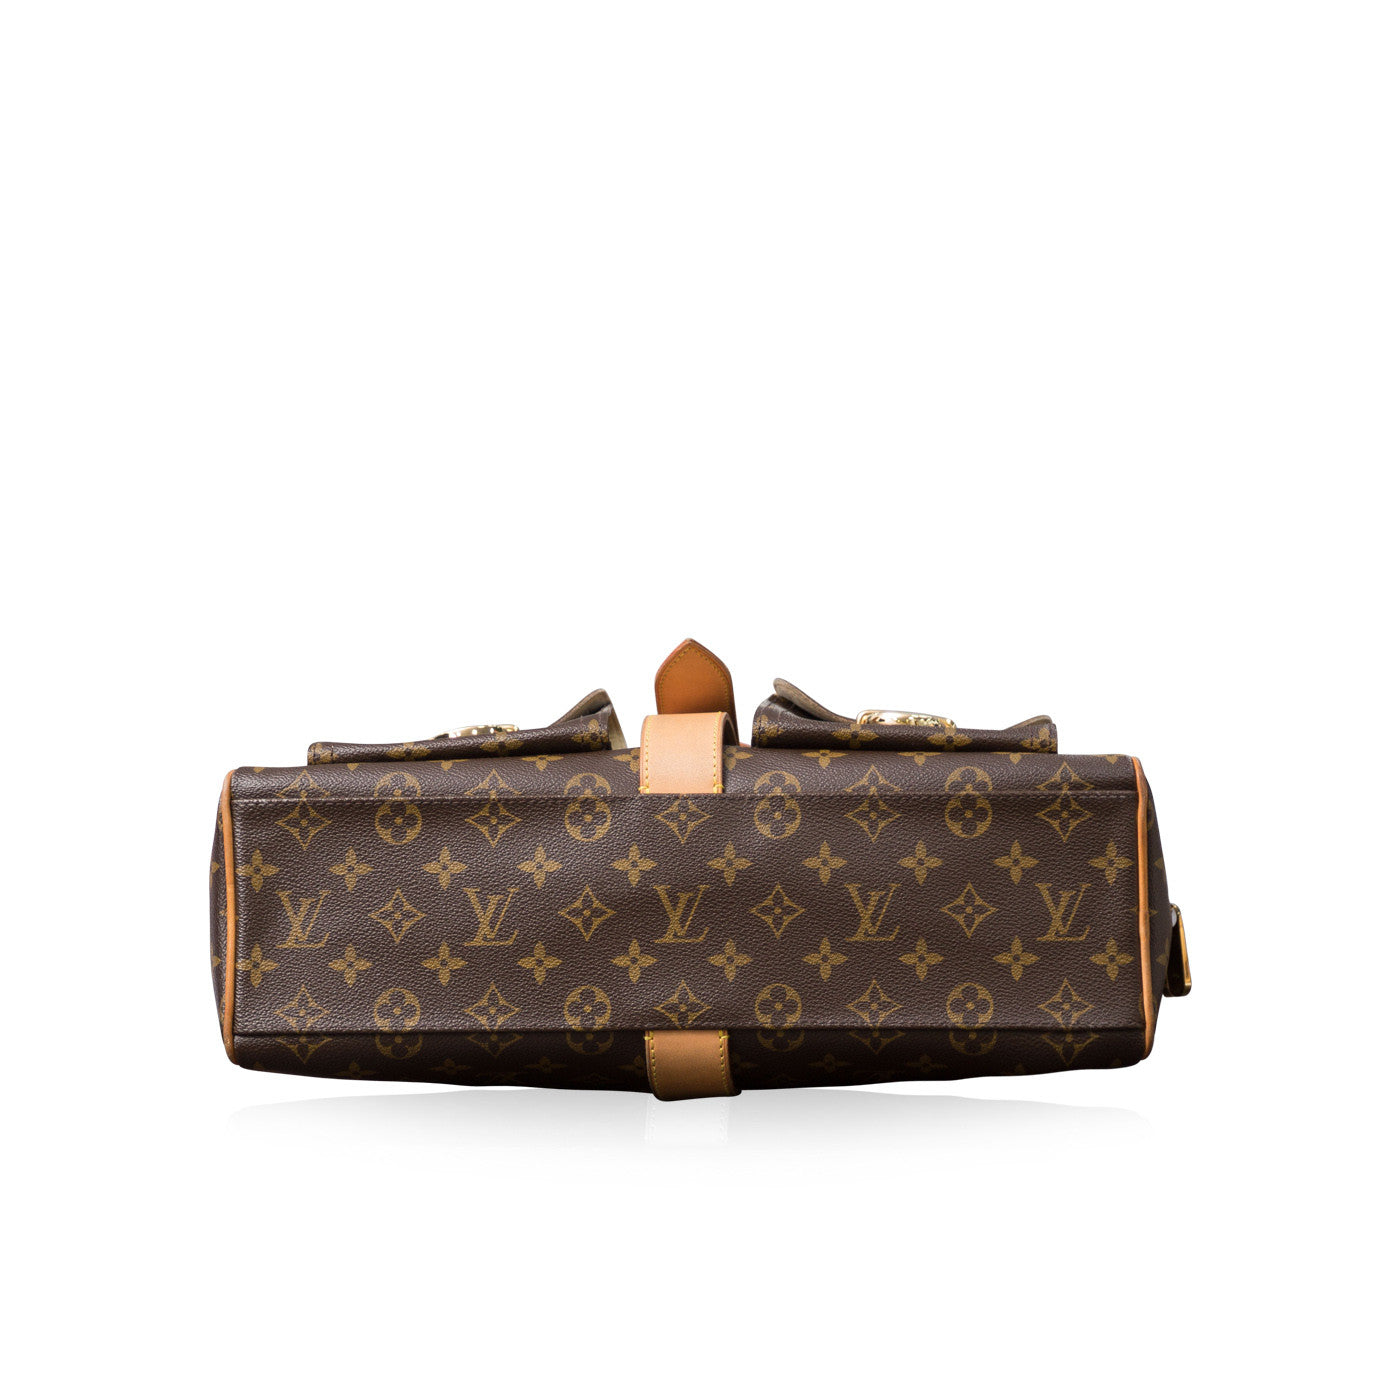 Louis Vuitton Manhattan Pm Hand Bag